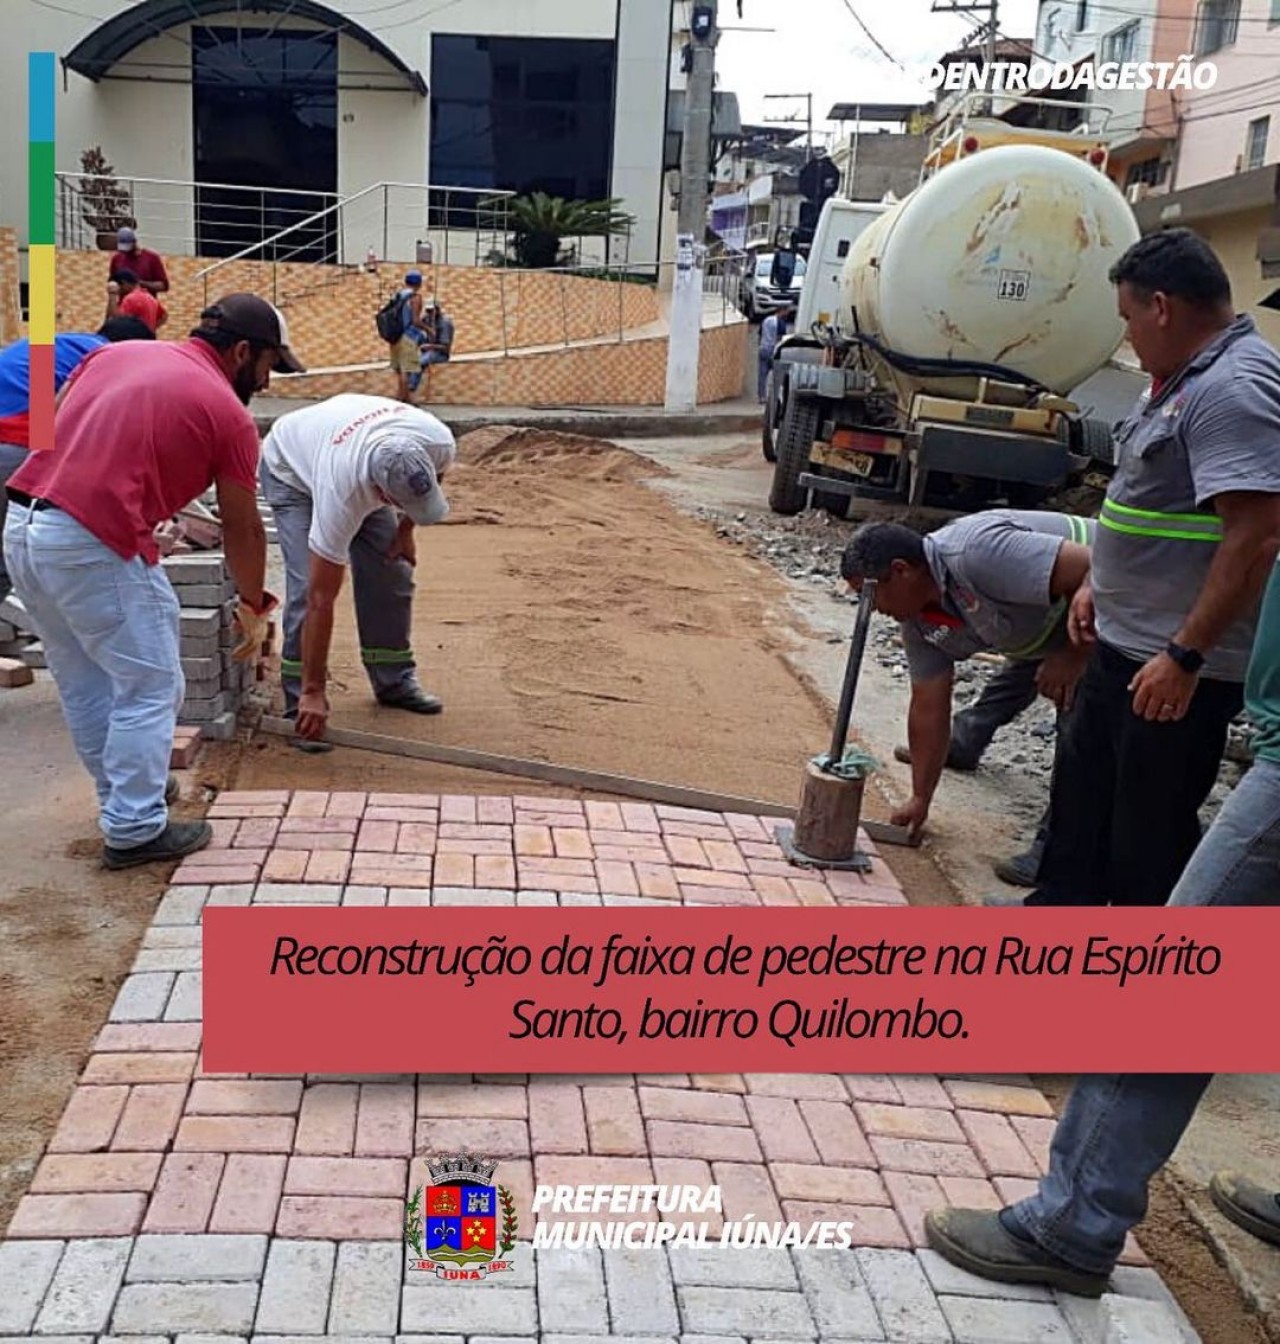 OBRA 33 - Faixa de pedestre na Rua Espírito Santo, bairro Quilombo.